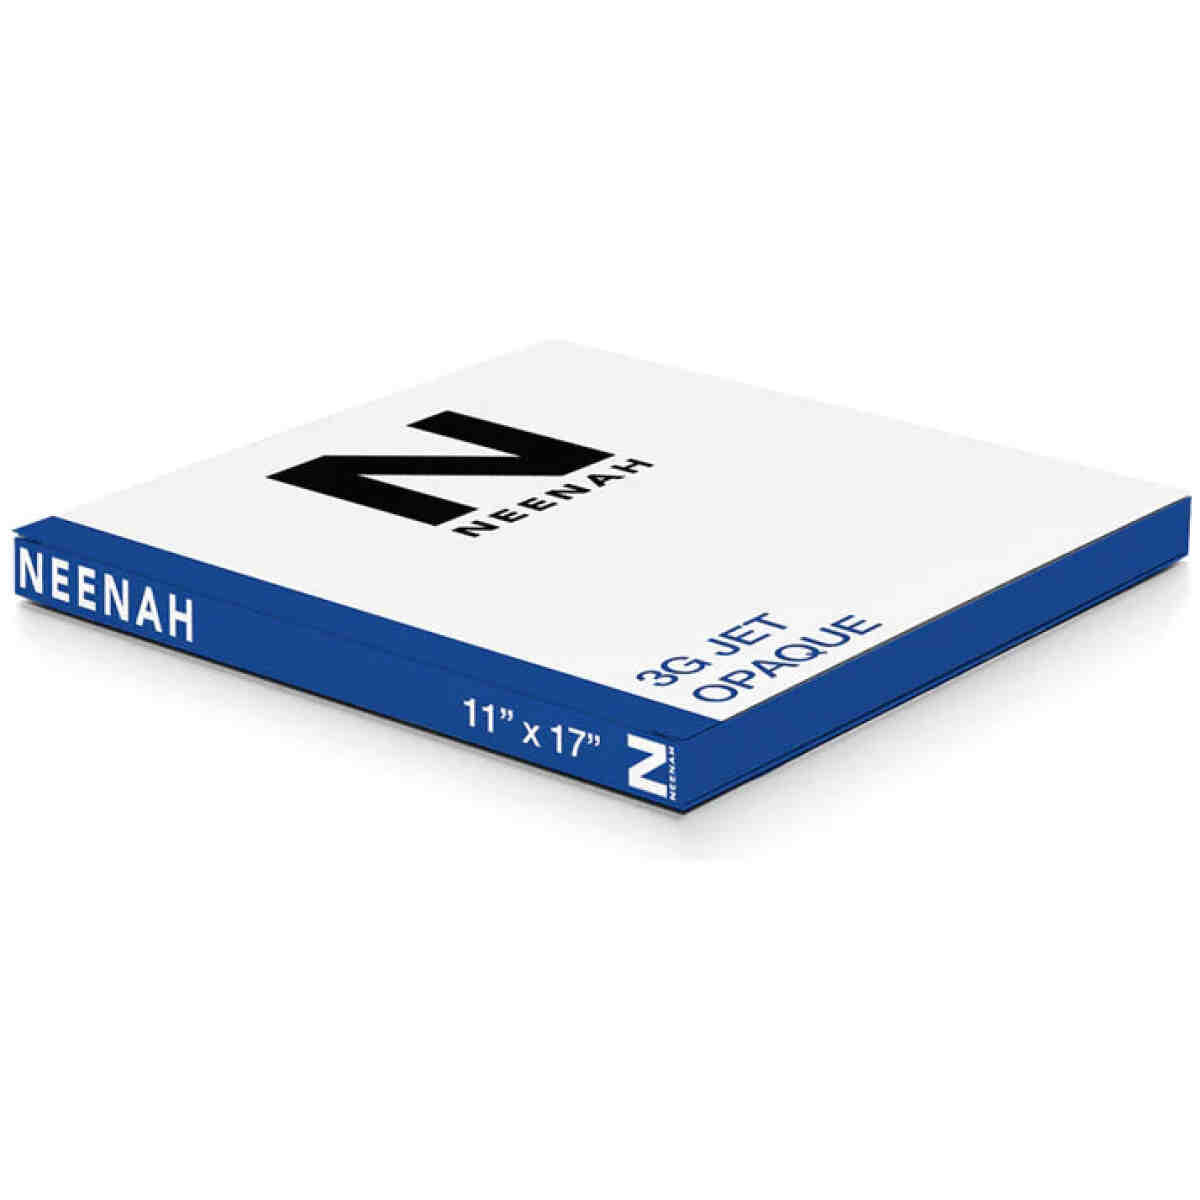 Neenah 3G Jet Laser 1 Opaque 11"X17" NEENAH®